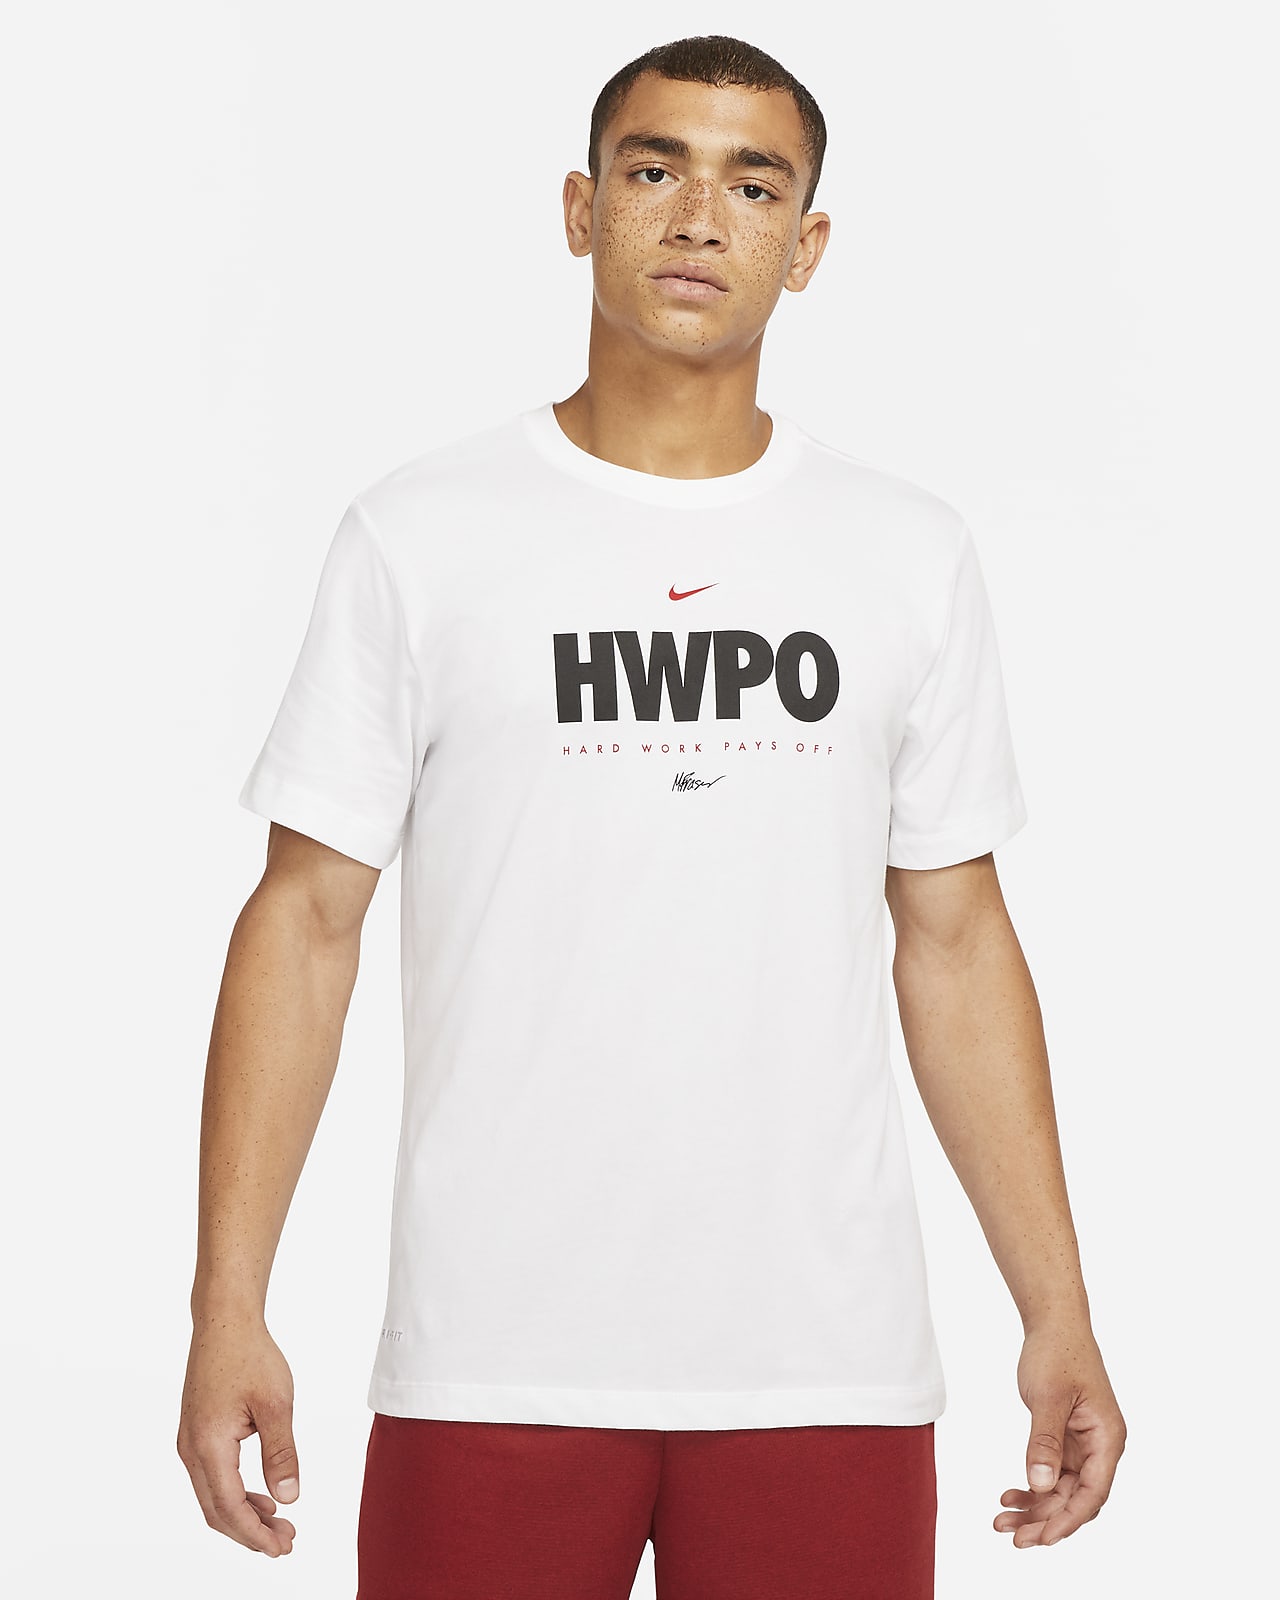 Nike "HWPO" Camiseta de entrenamiento - Hombre. Nike ES